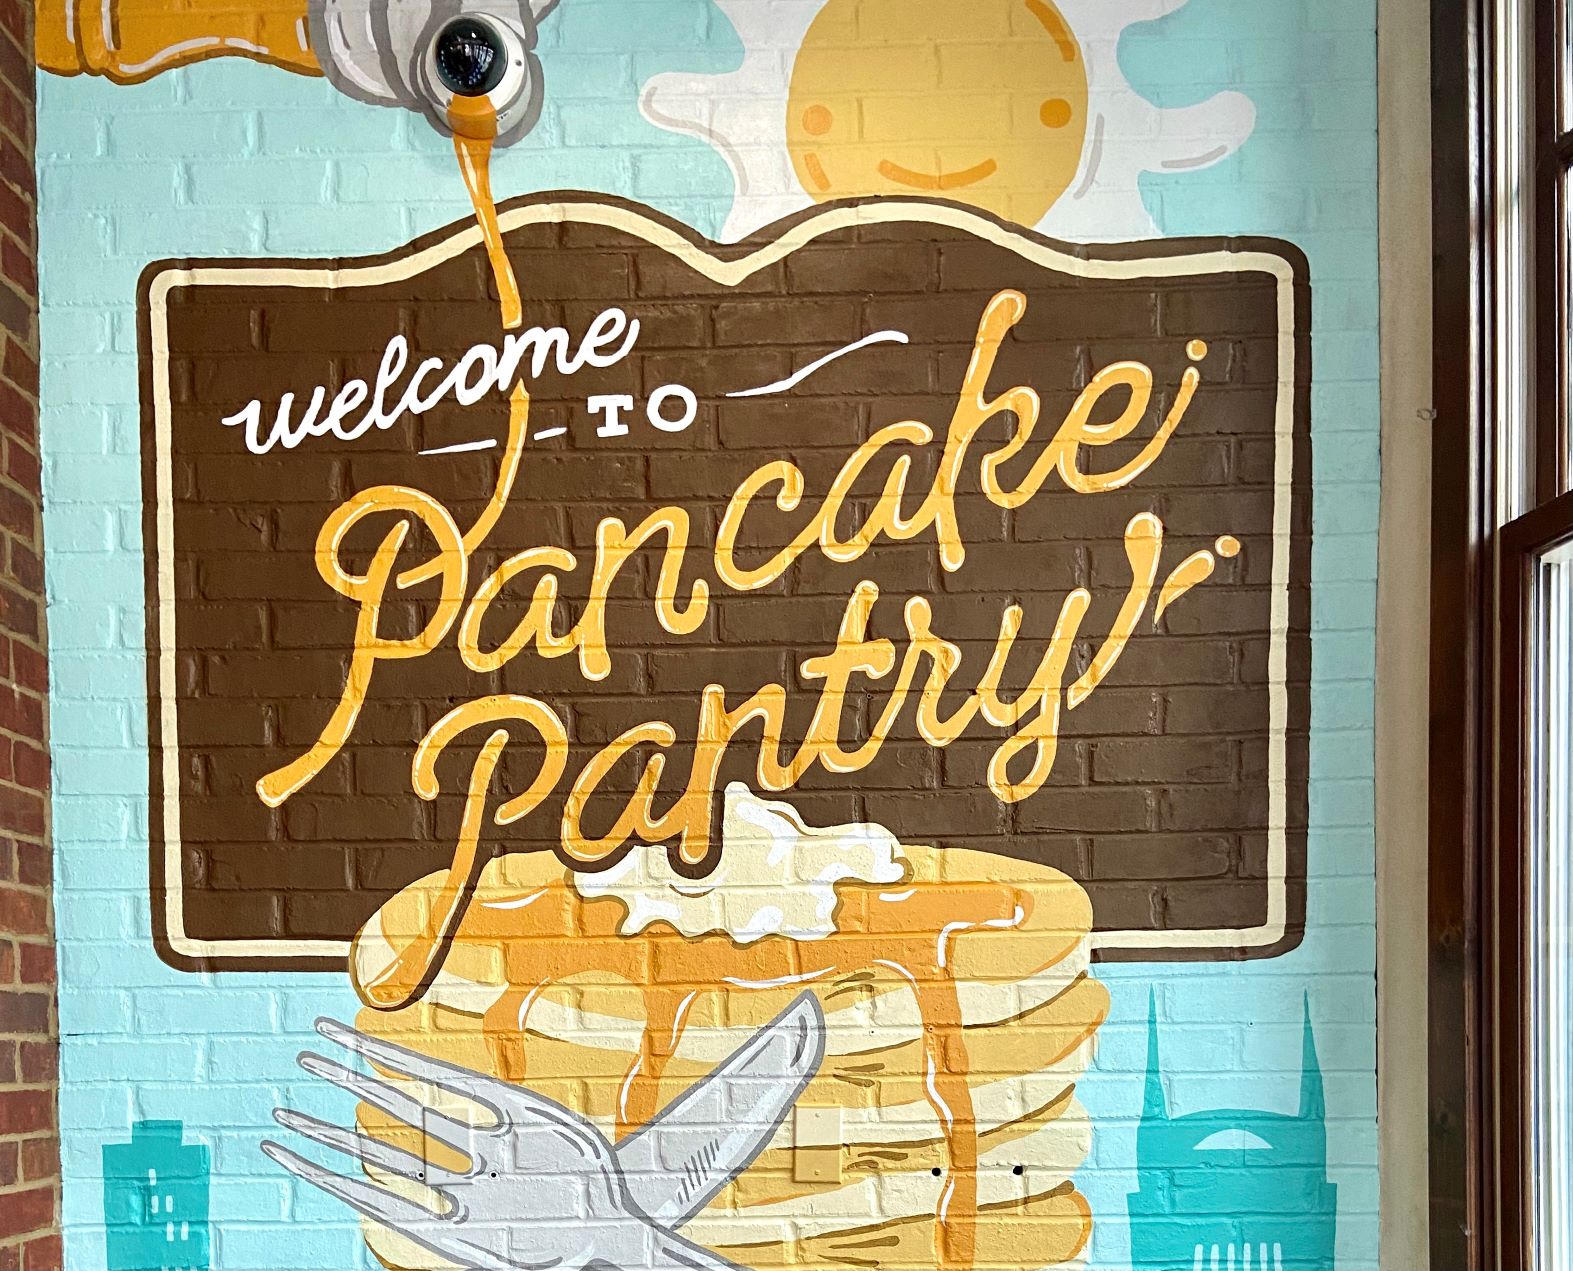 Pancake Pantry in Nashville, TN